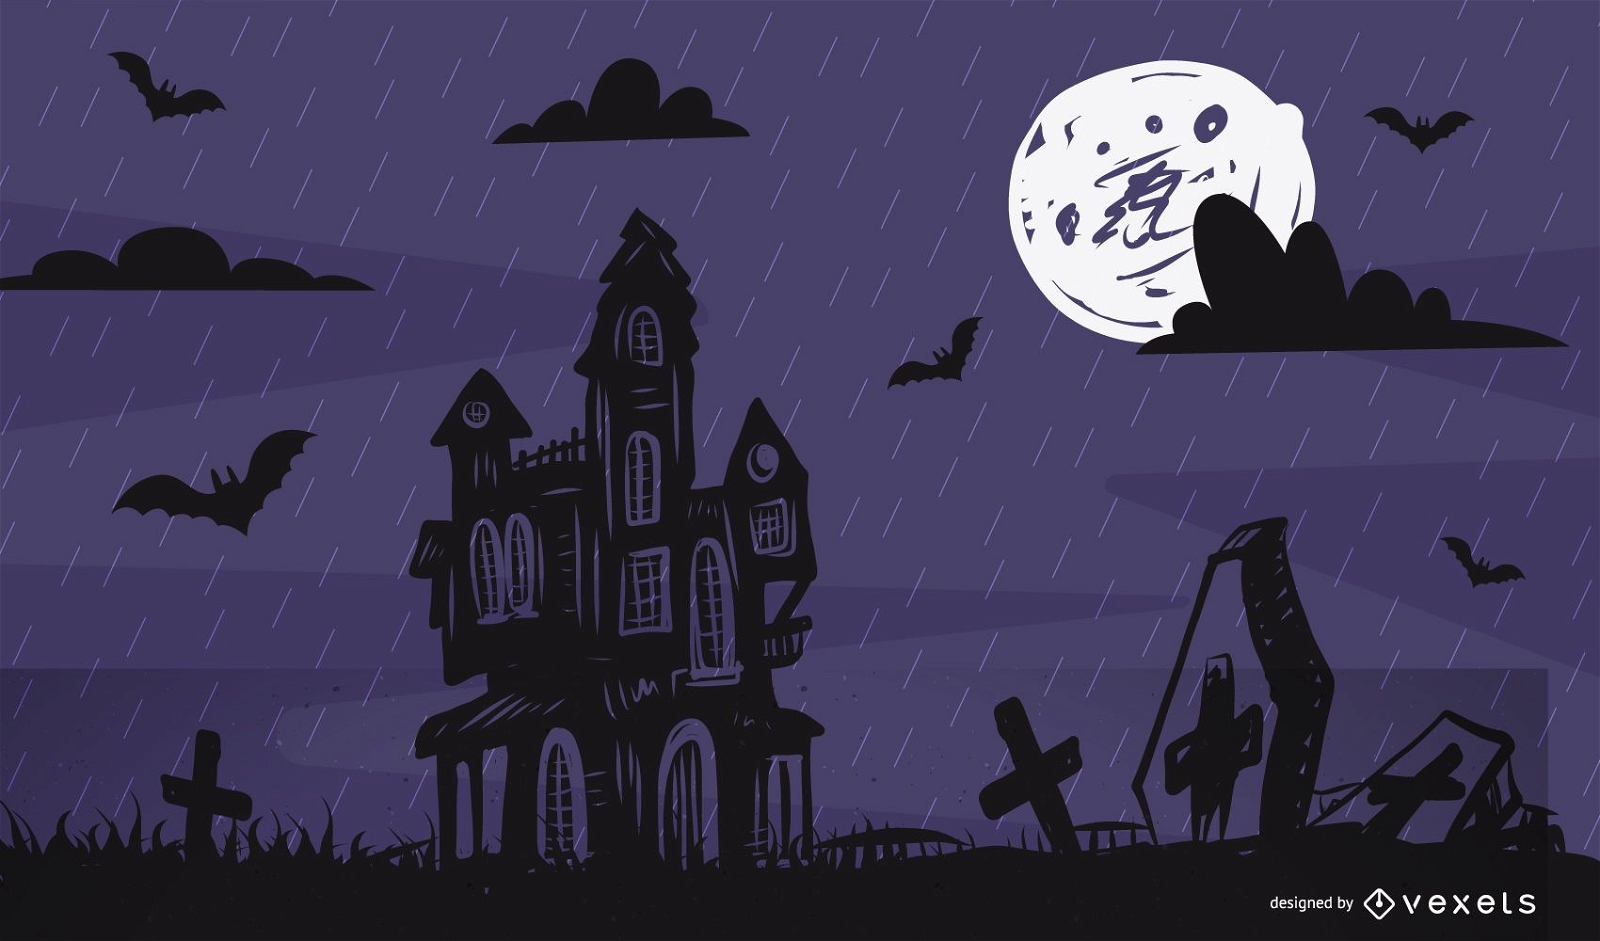 Vollmond gejagte Halloween-Illustration